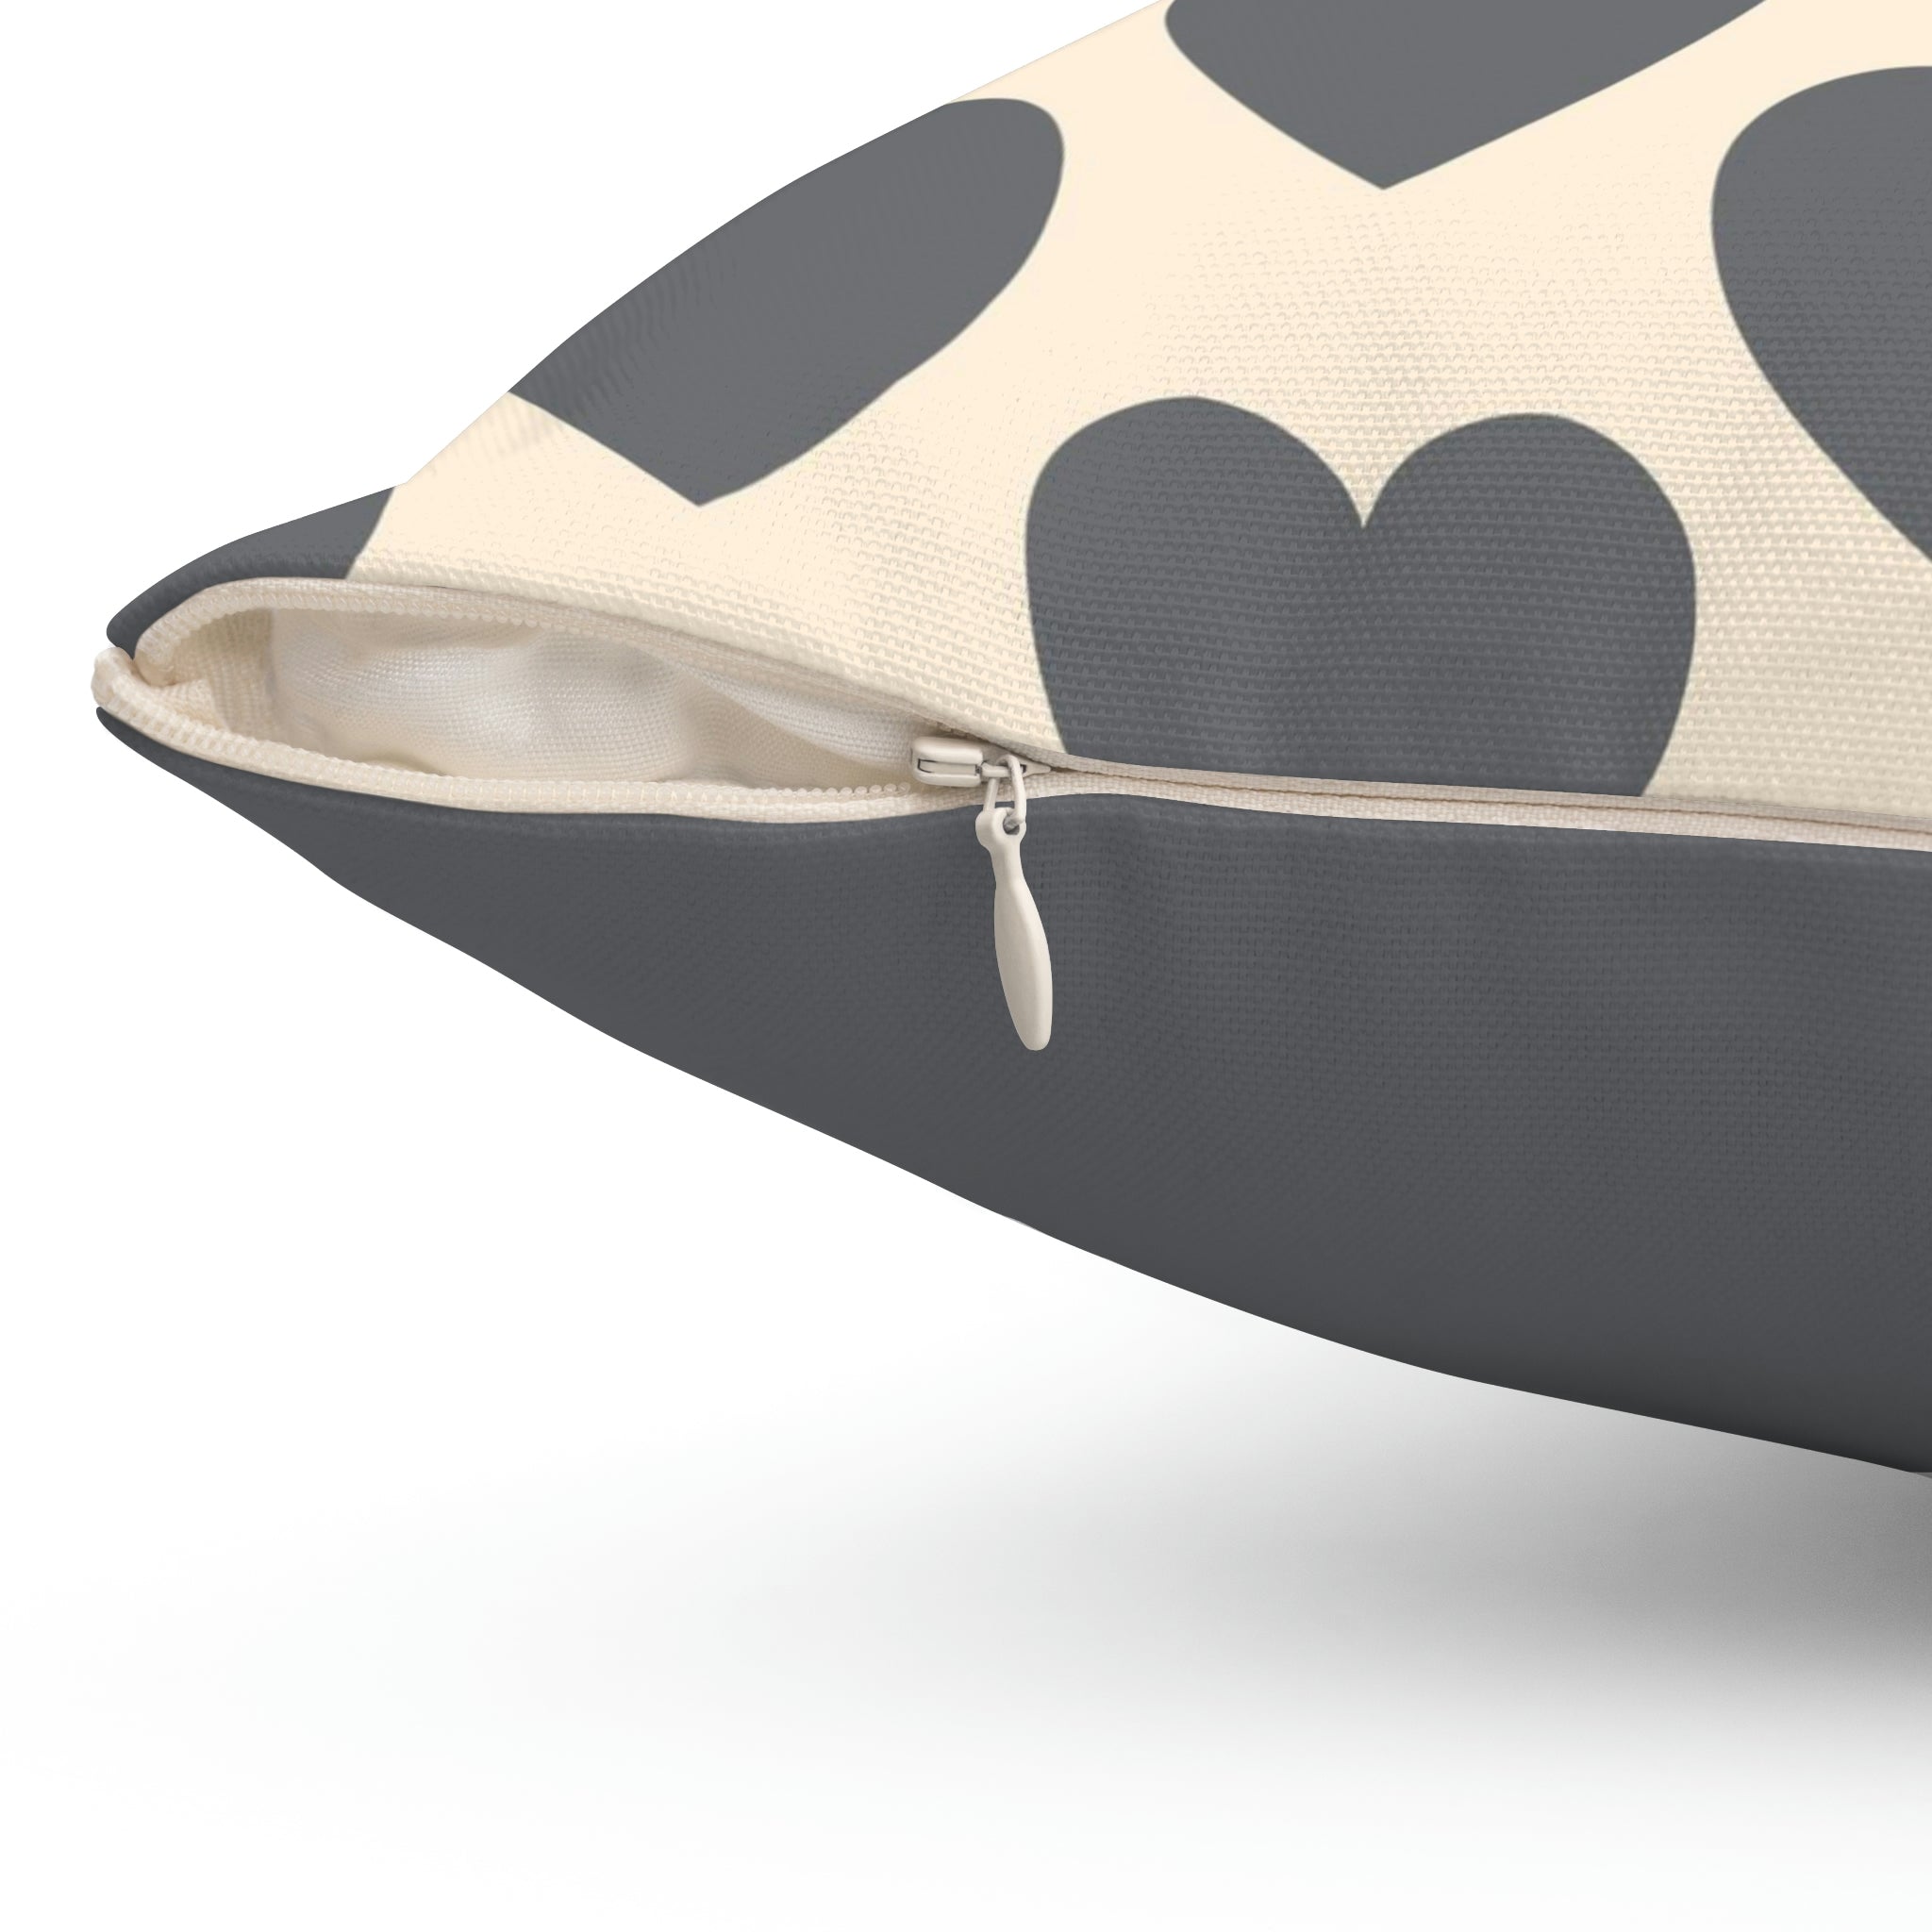 Love Spun Polyester Pillow Heart off white/grey  pattern